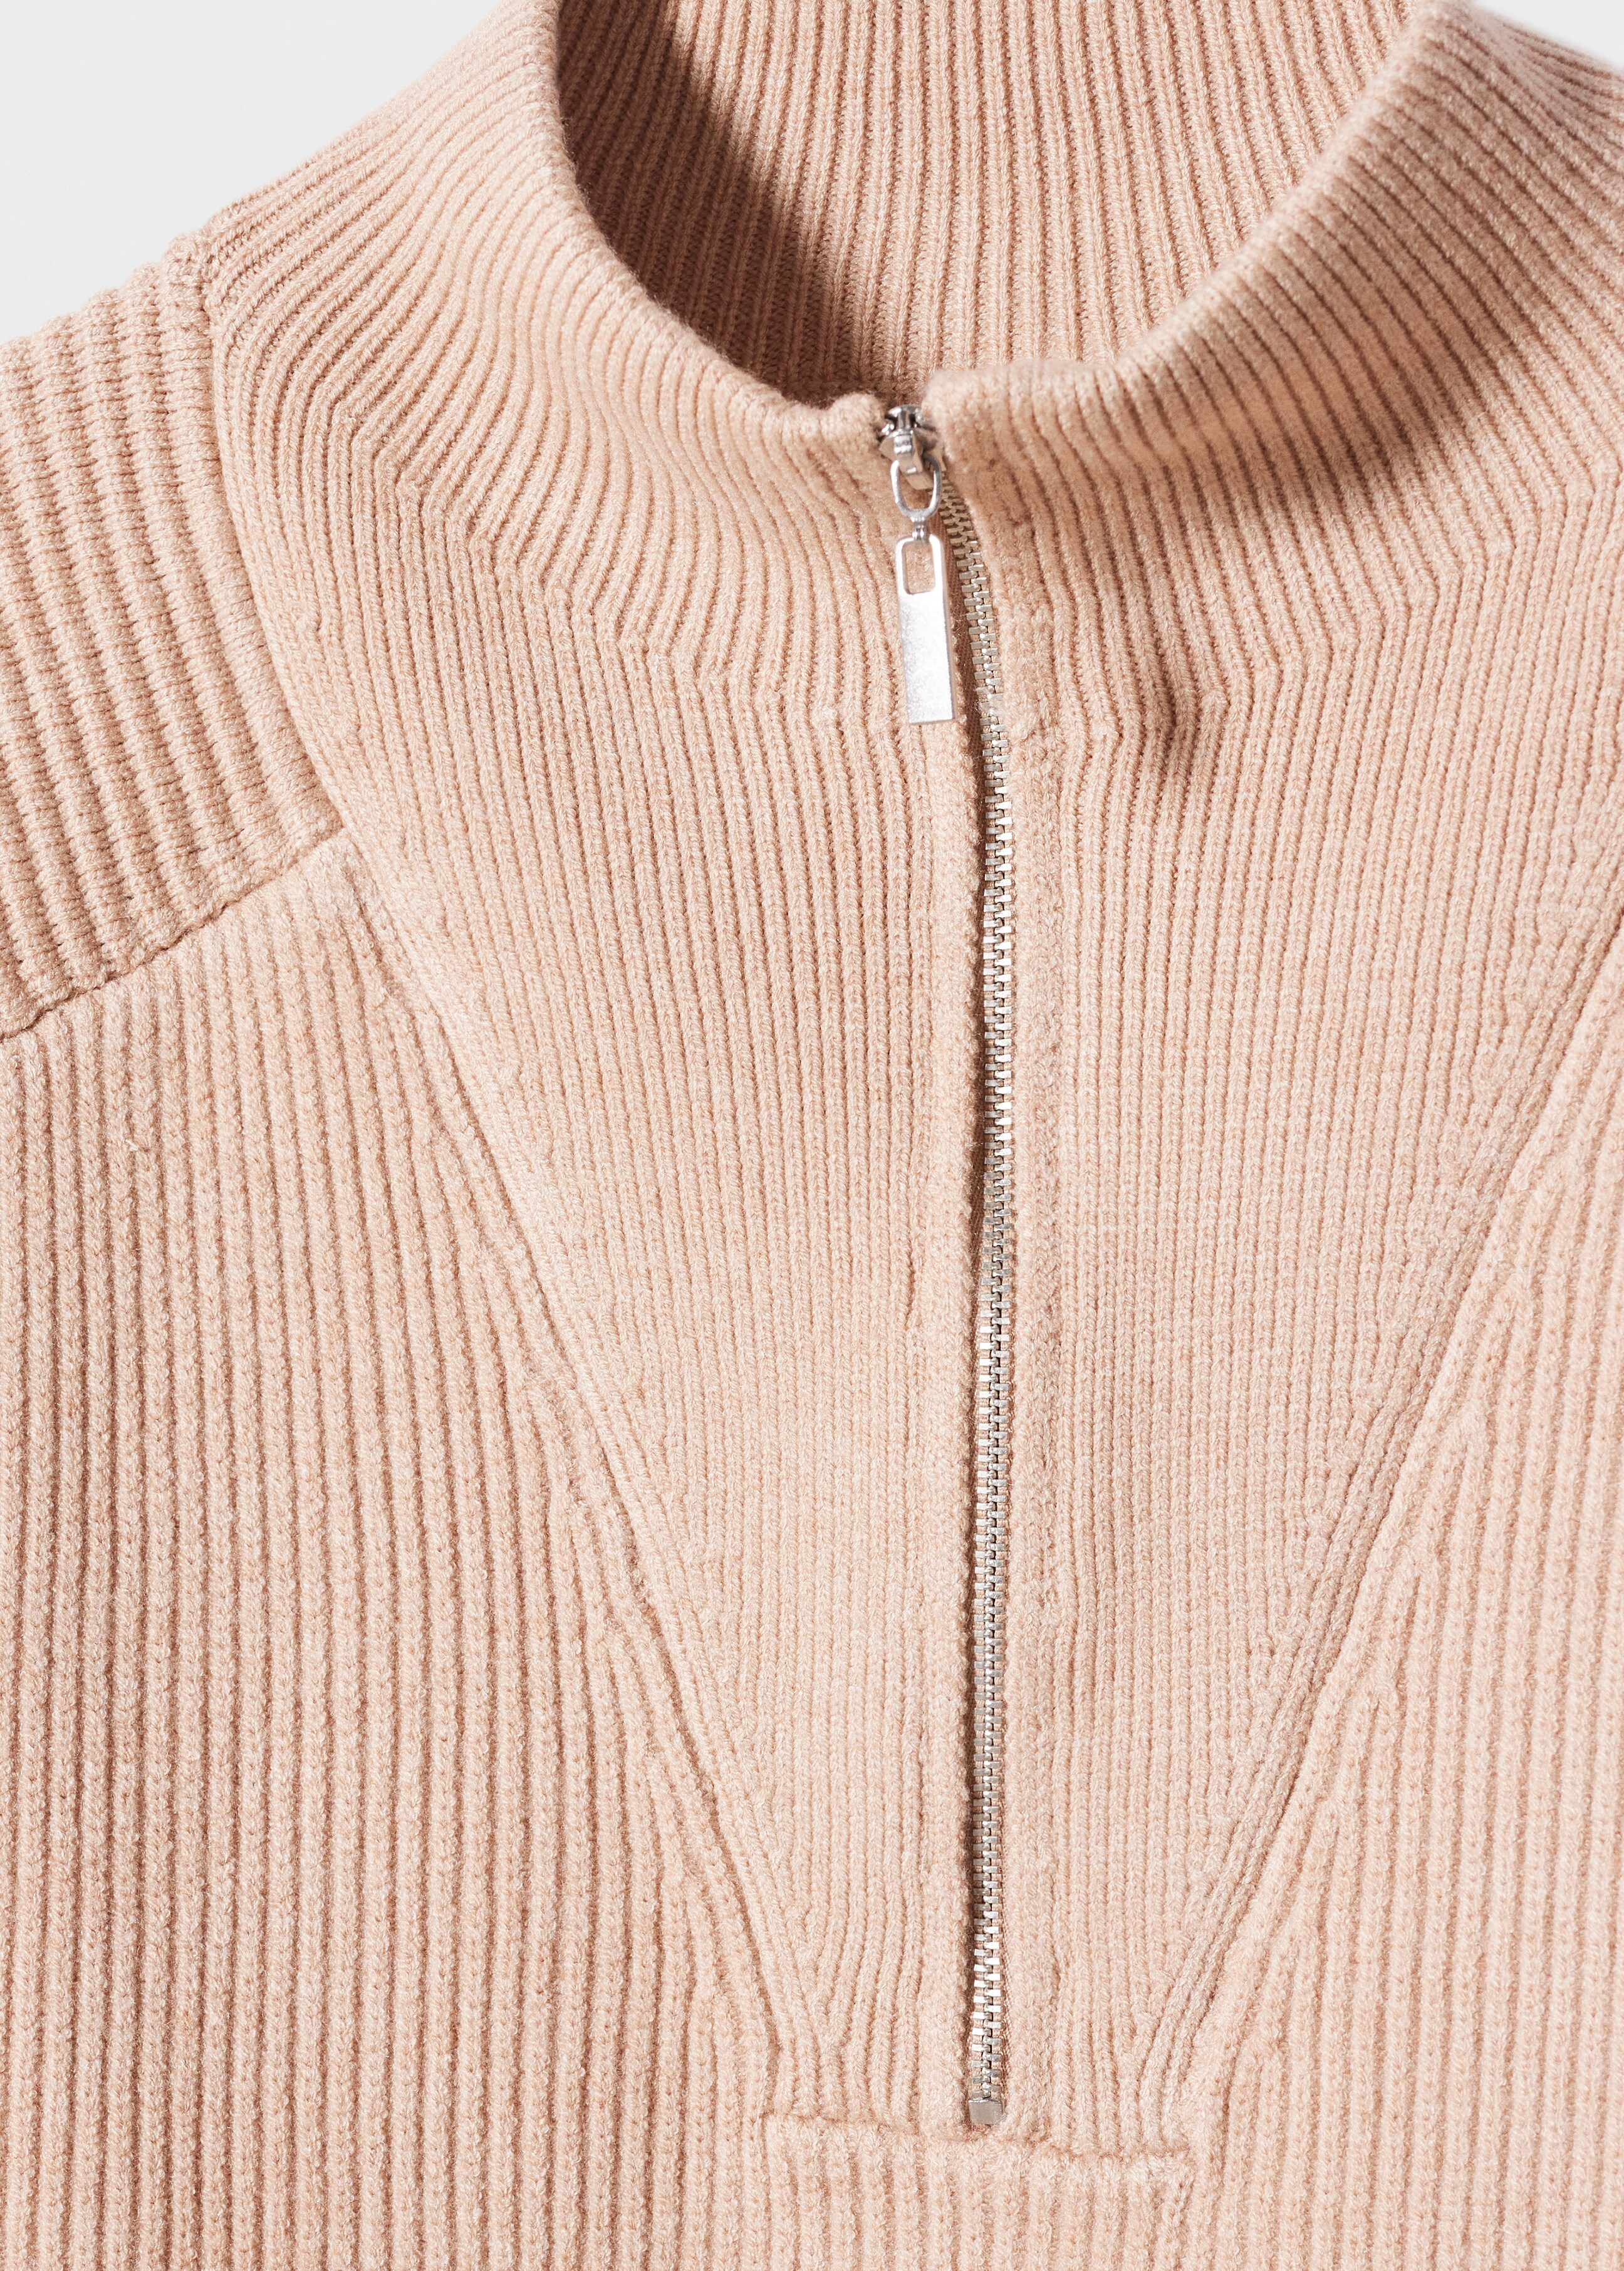 Jersey cuello alto cremallera - Detalle del artículo 8